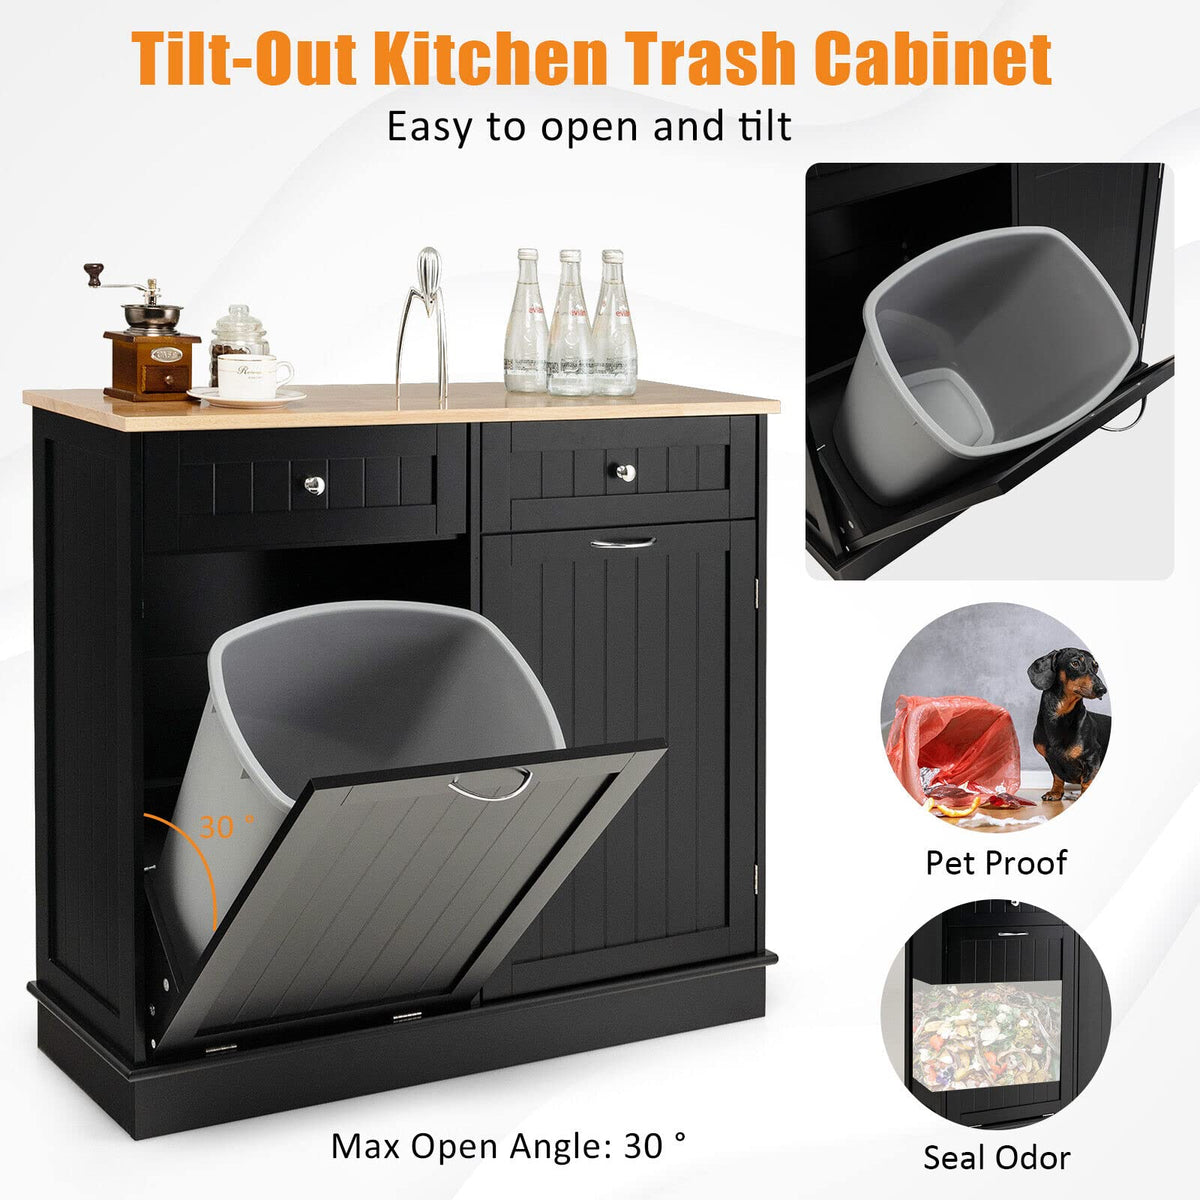 Giantex Kitchen Trash Cabinet, Tilt Out Trash Bin Cabinet with Single Trash Can Holder